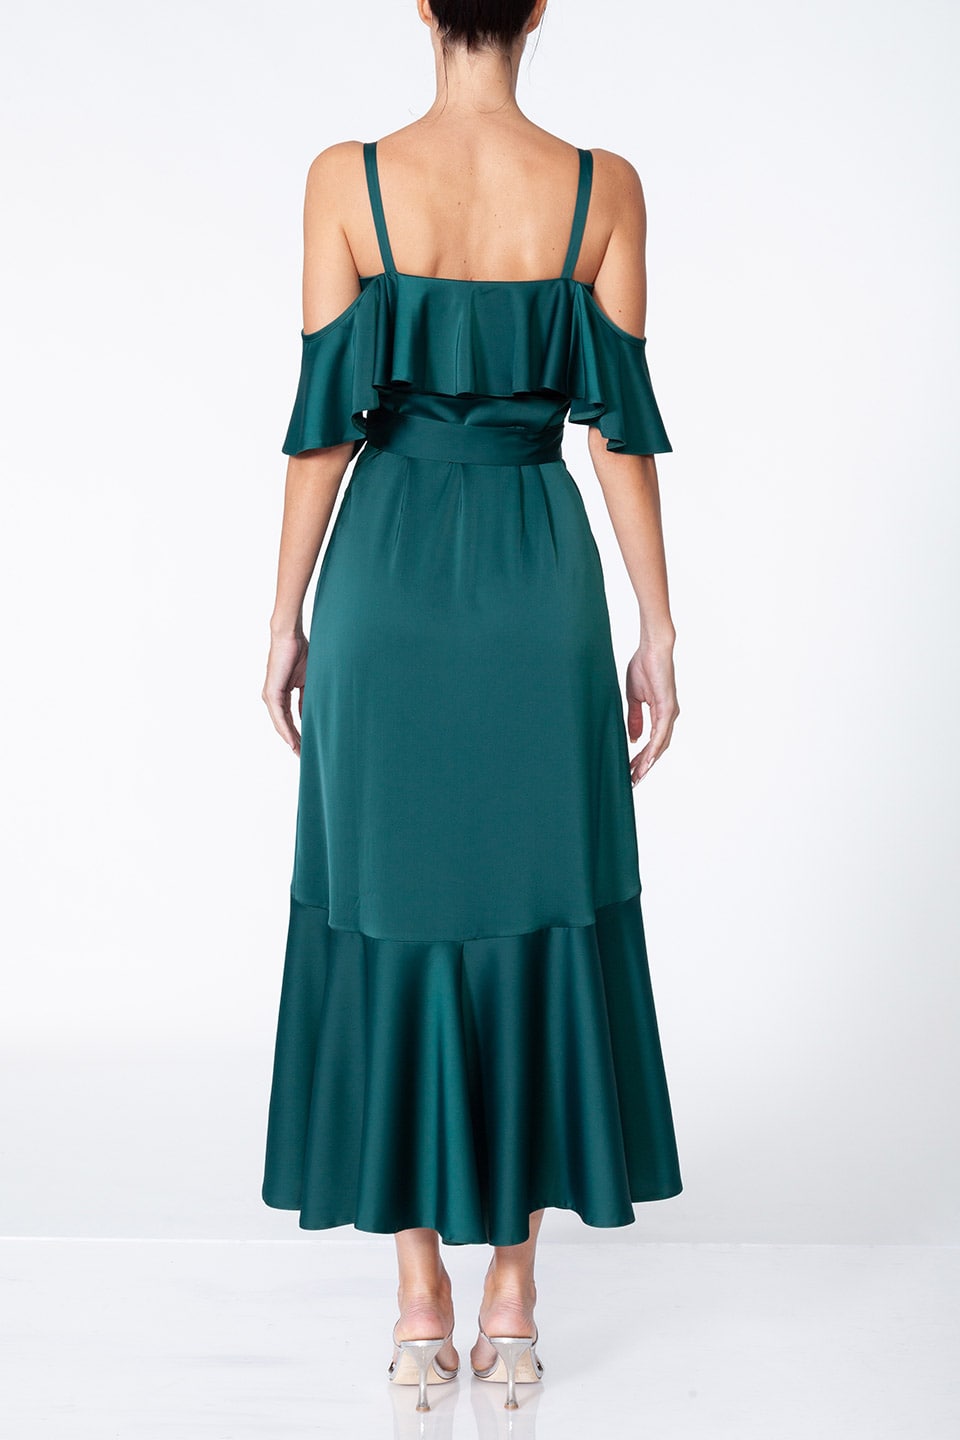 Anze fashion designer's Thea midi dress in Eemerald color, back full-body view